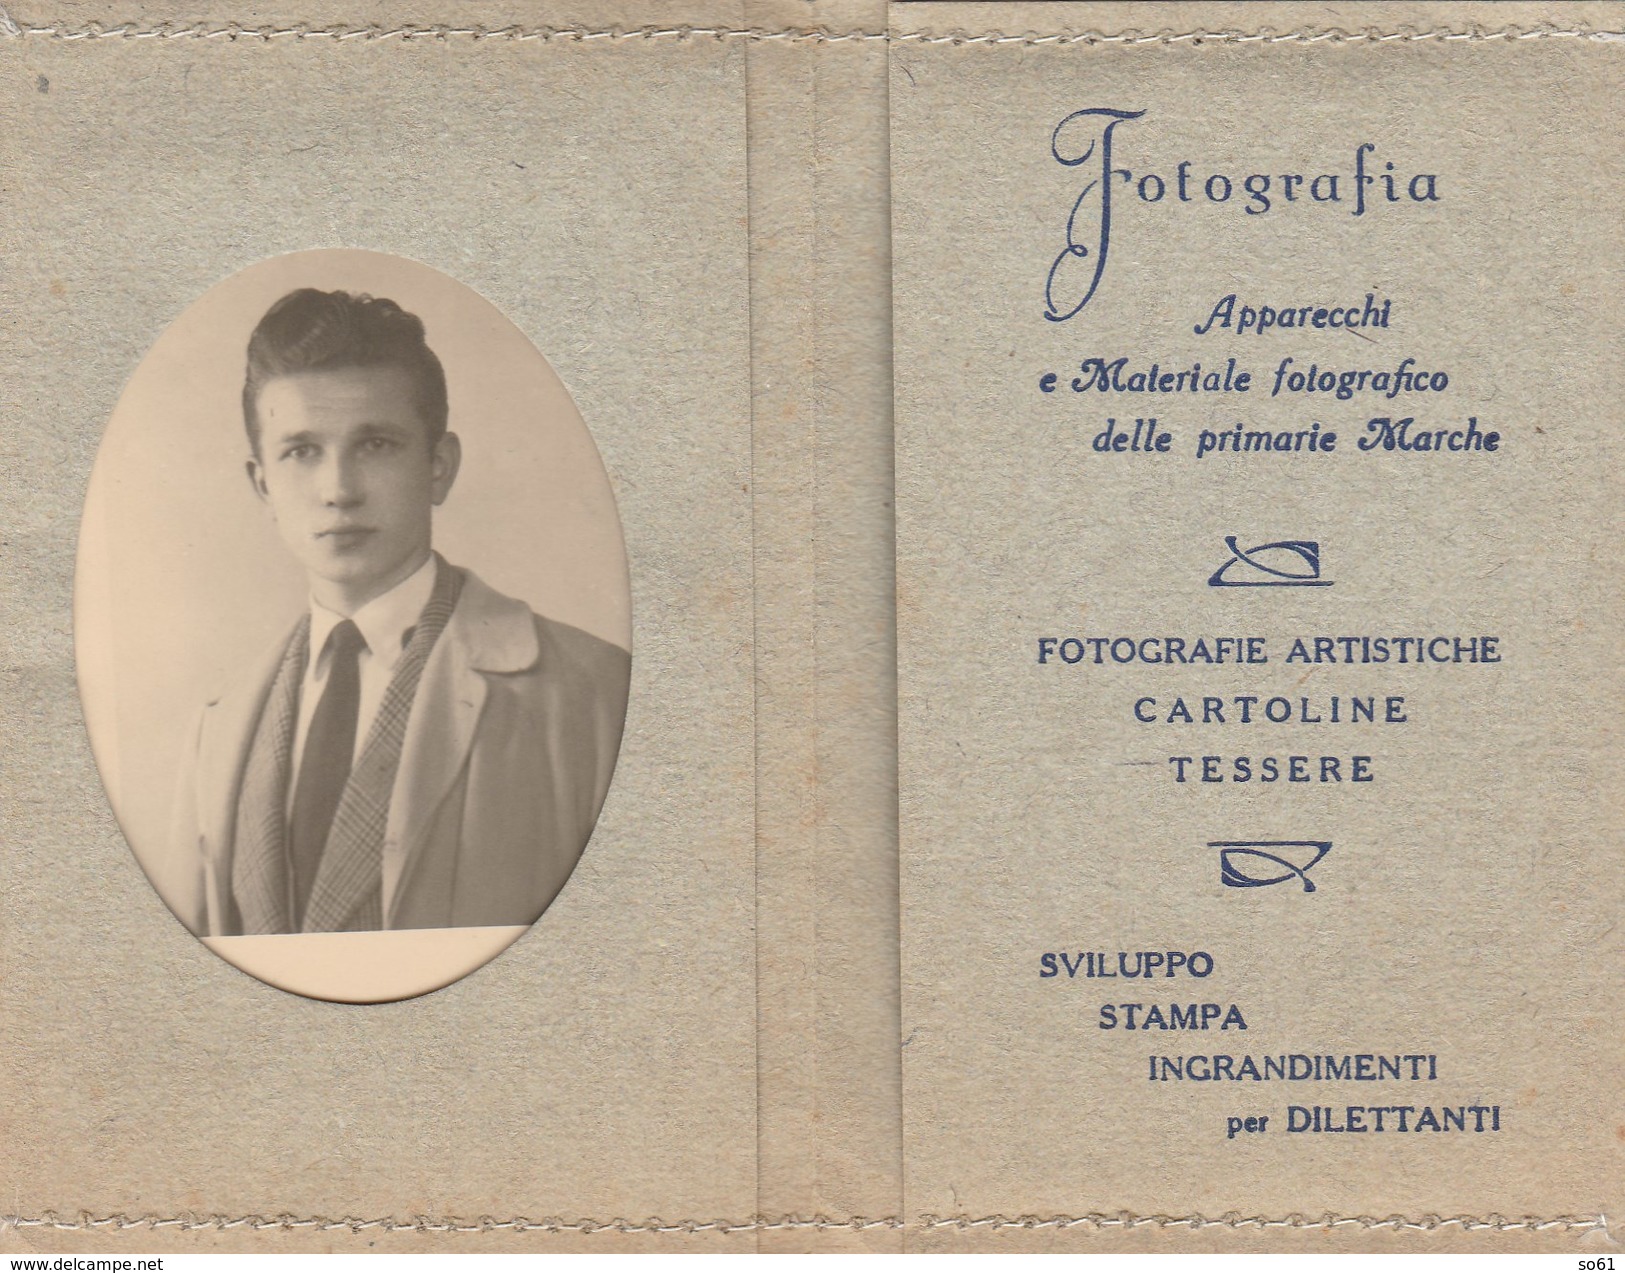 6308. Lp   Fotografia Siccardi Torino Cartoline Tessere Sviluppo Stampa - Materiale E Accessori